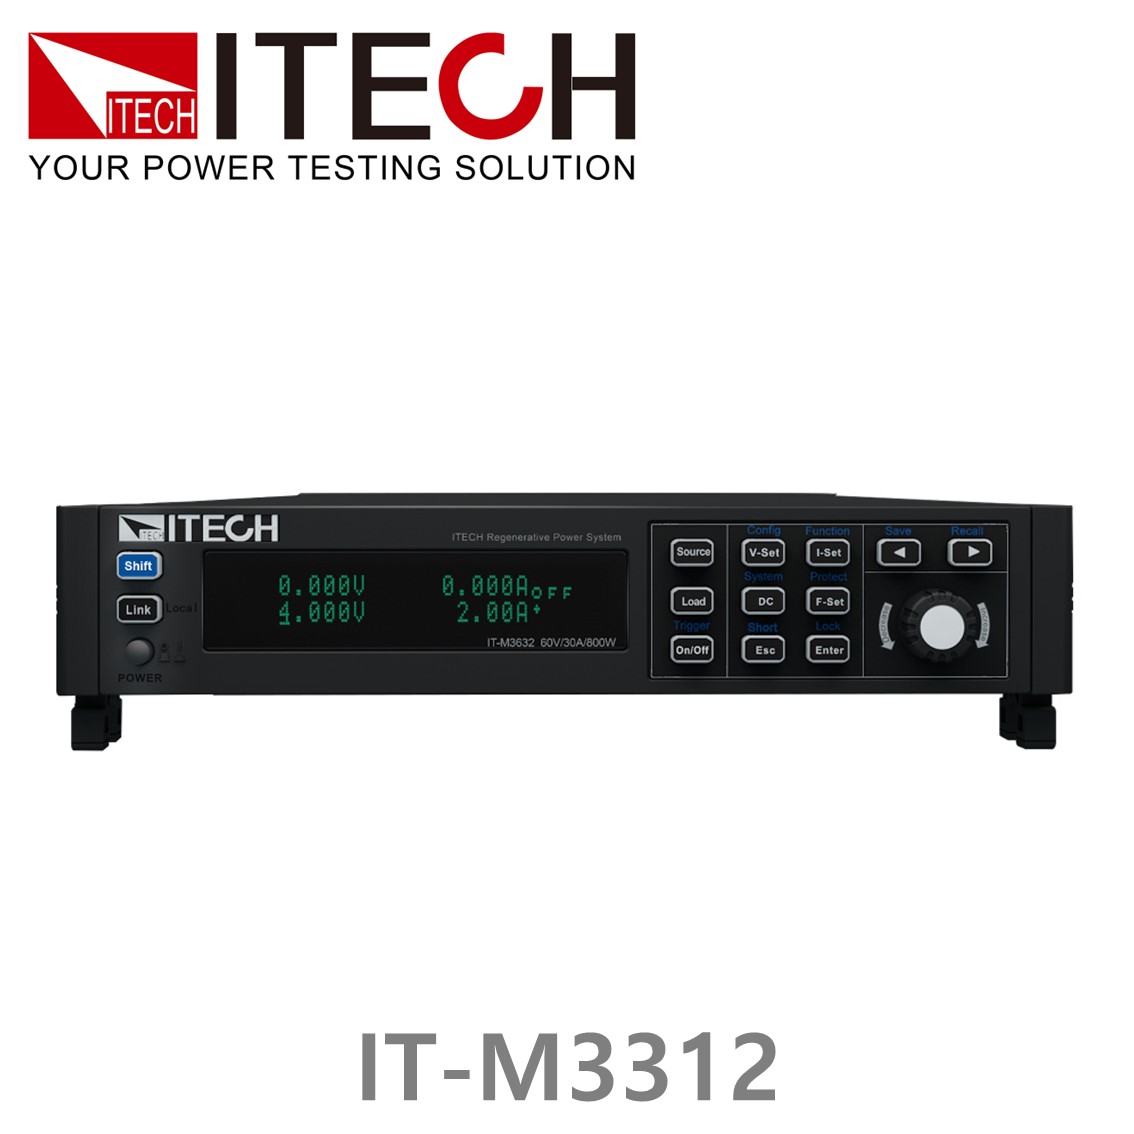 [ ITECH ] IT-M3312 DC전자부하기 (60V/30A/200W), DC전자로드